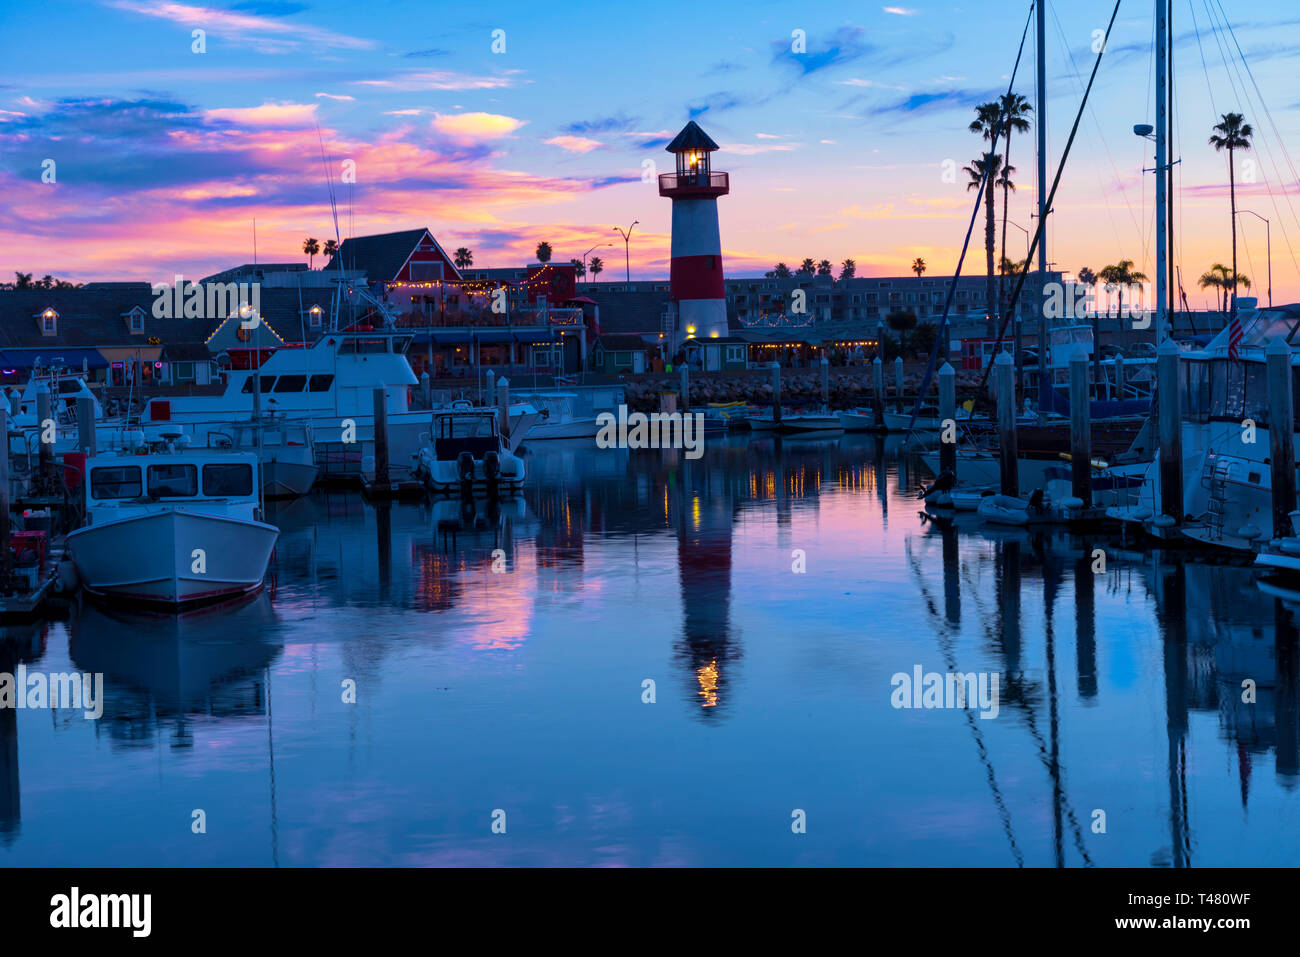 Sonnenuntergang mit Rosa, Rot, Gelb und Blau Skier über Hafen und Leuchtturm Boote, Wasser Reflexion der Himmel. und den Leuchtturm. Stockfoto